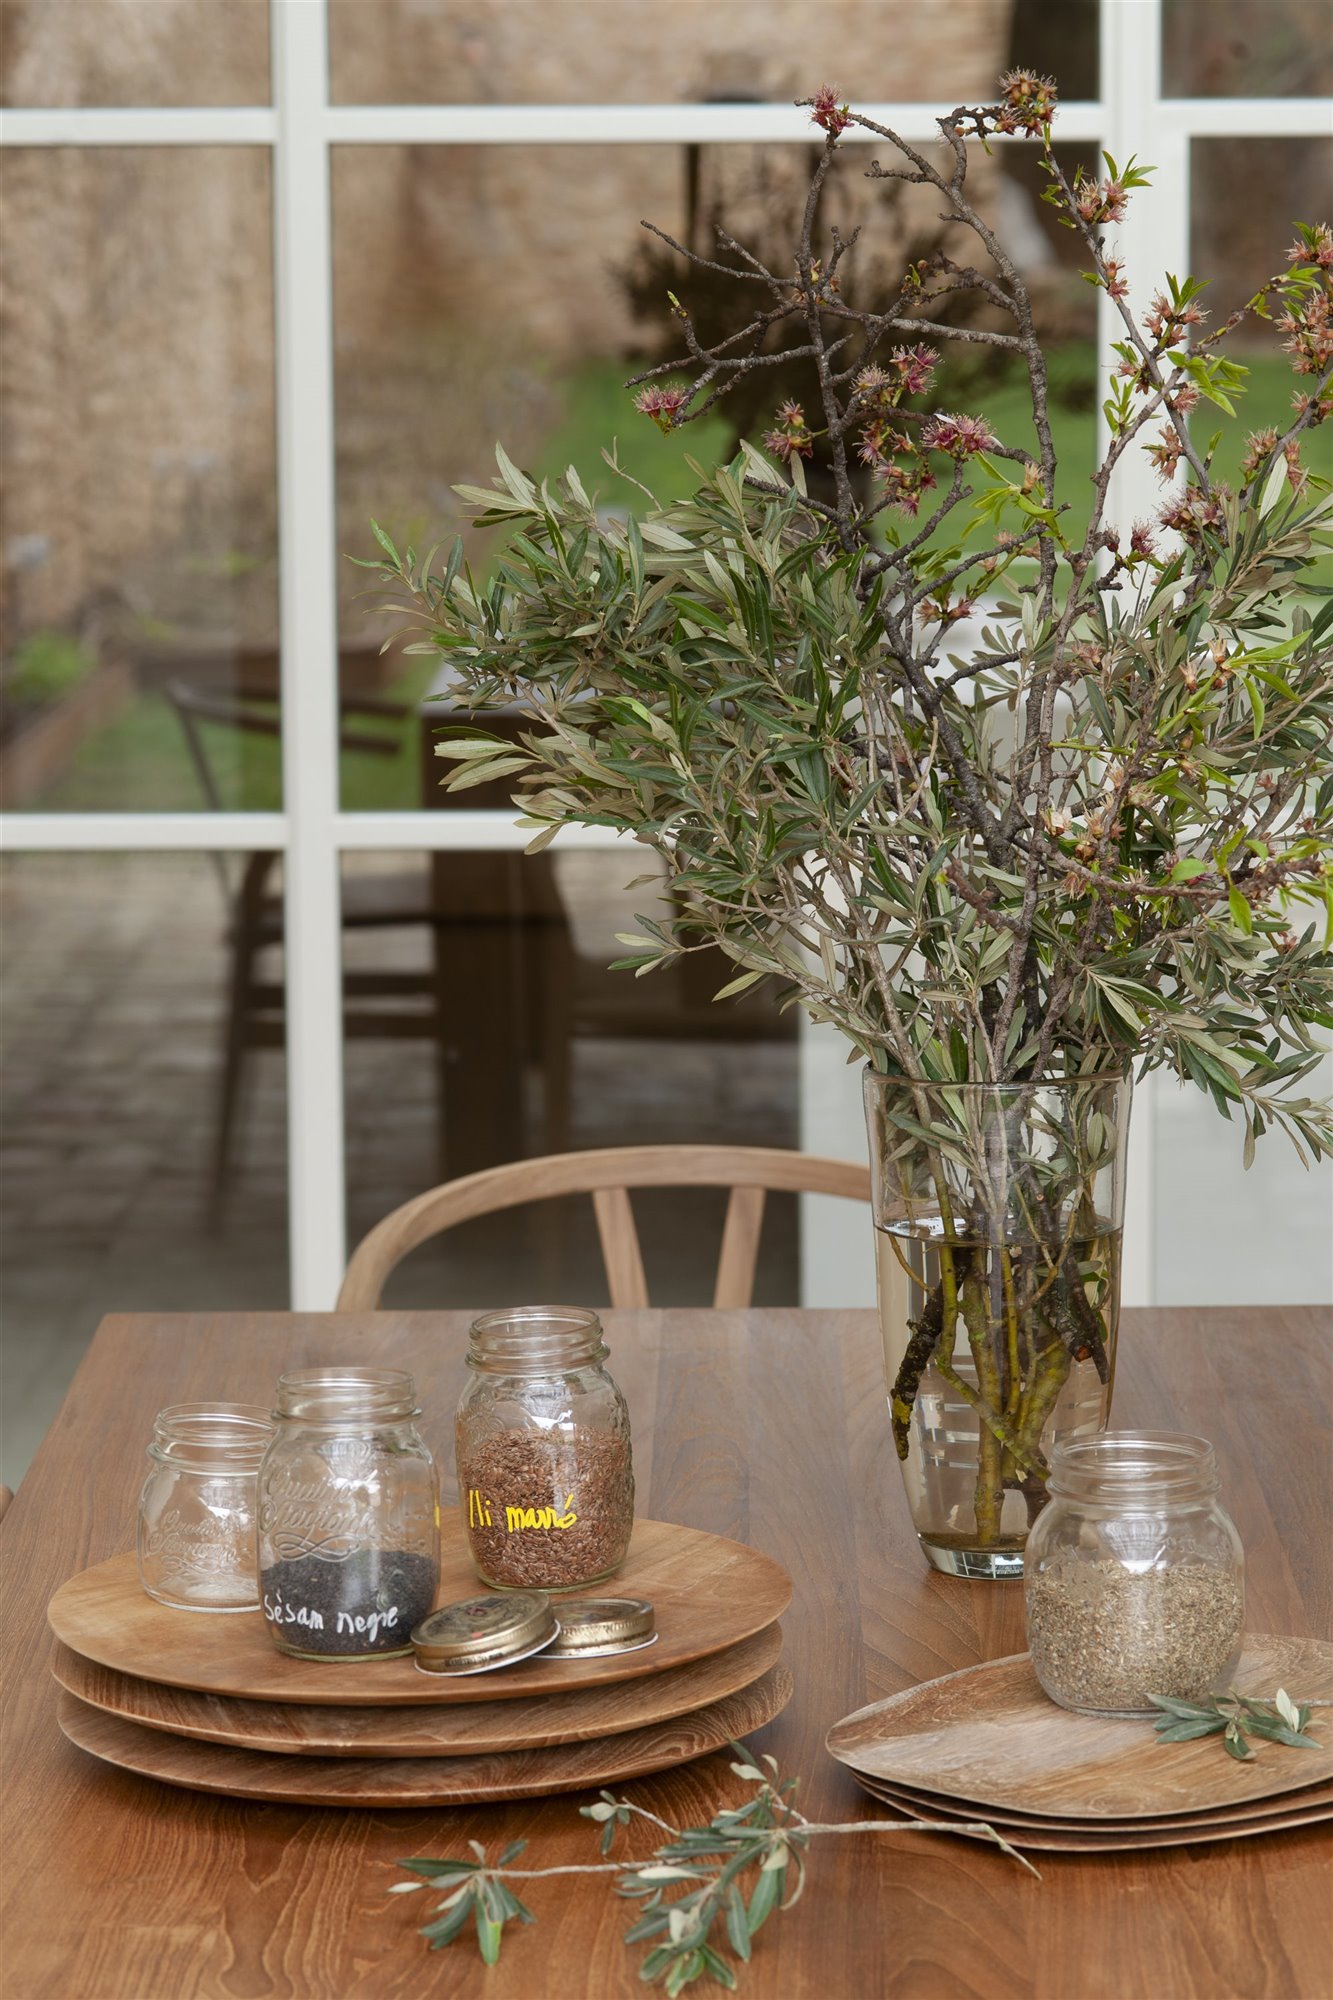 Mesa con platos y bandejas de madera foto Pere peris. Los invitados